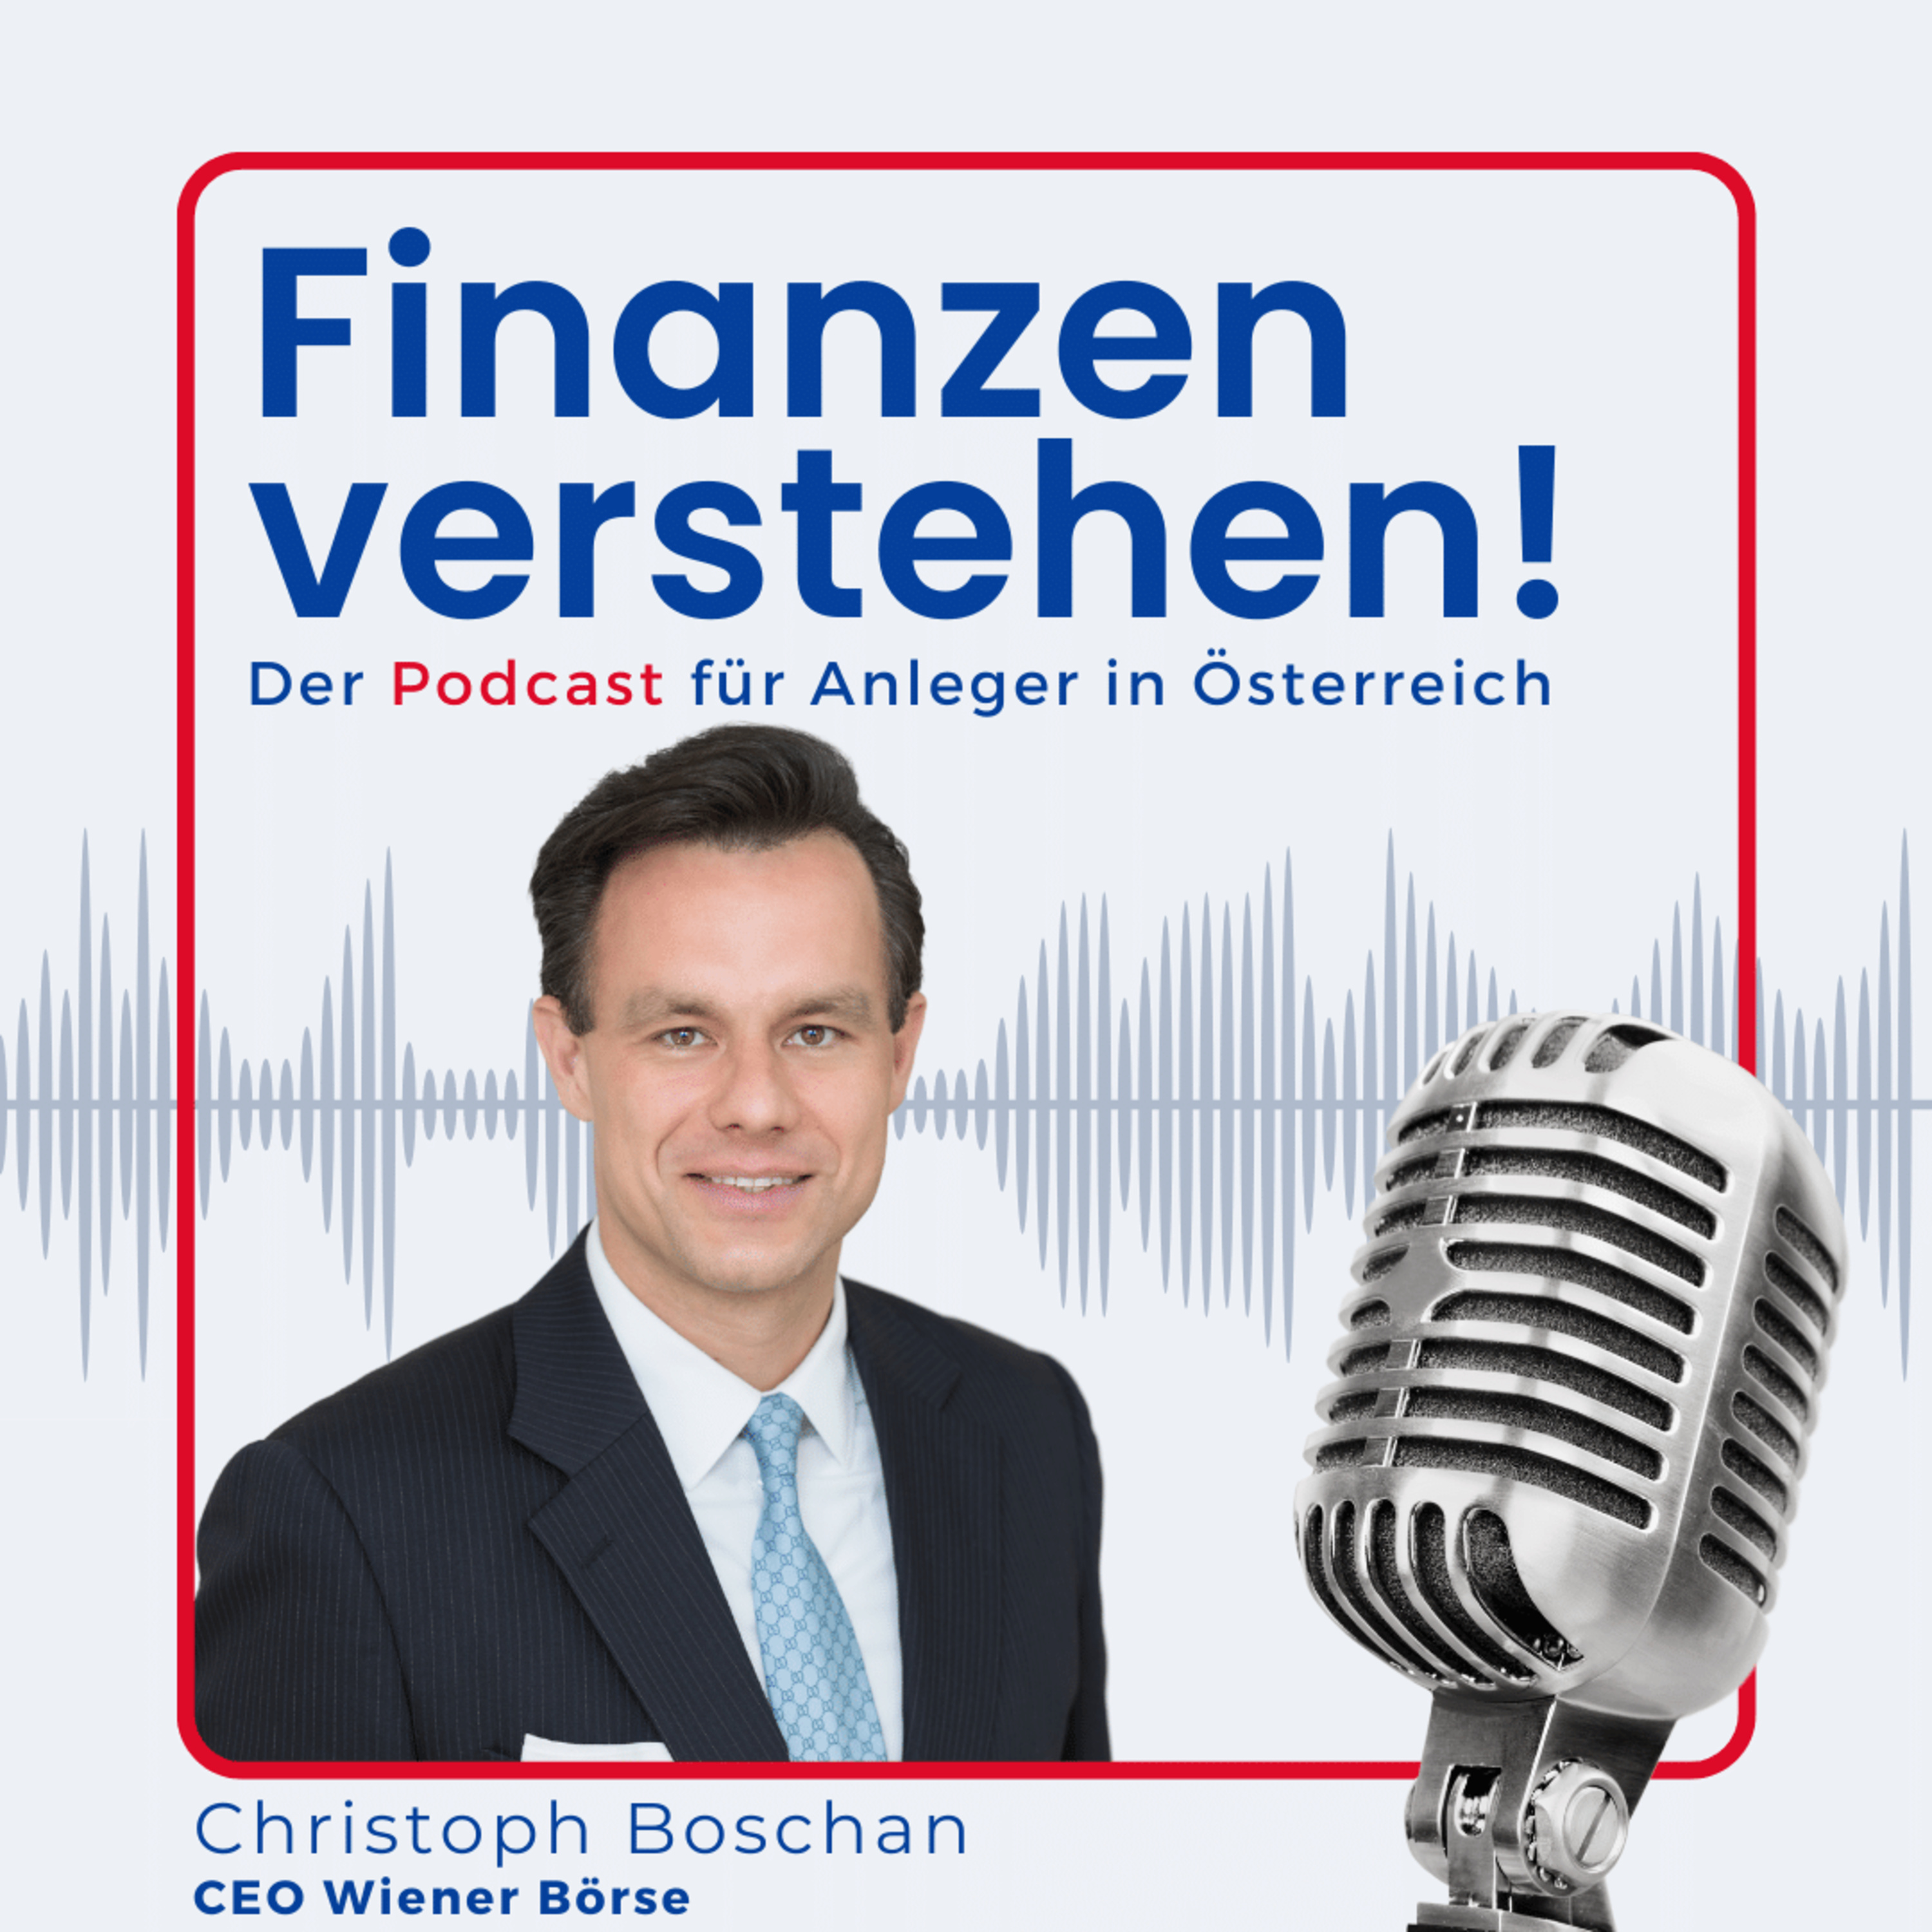 (#58) Nachhaltig investieren? - Wiener Börse CEO, Christoph Boschan im Experteninterview - Youtube